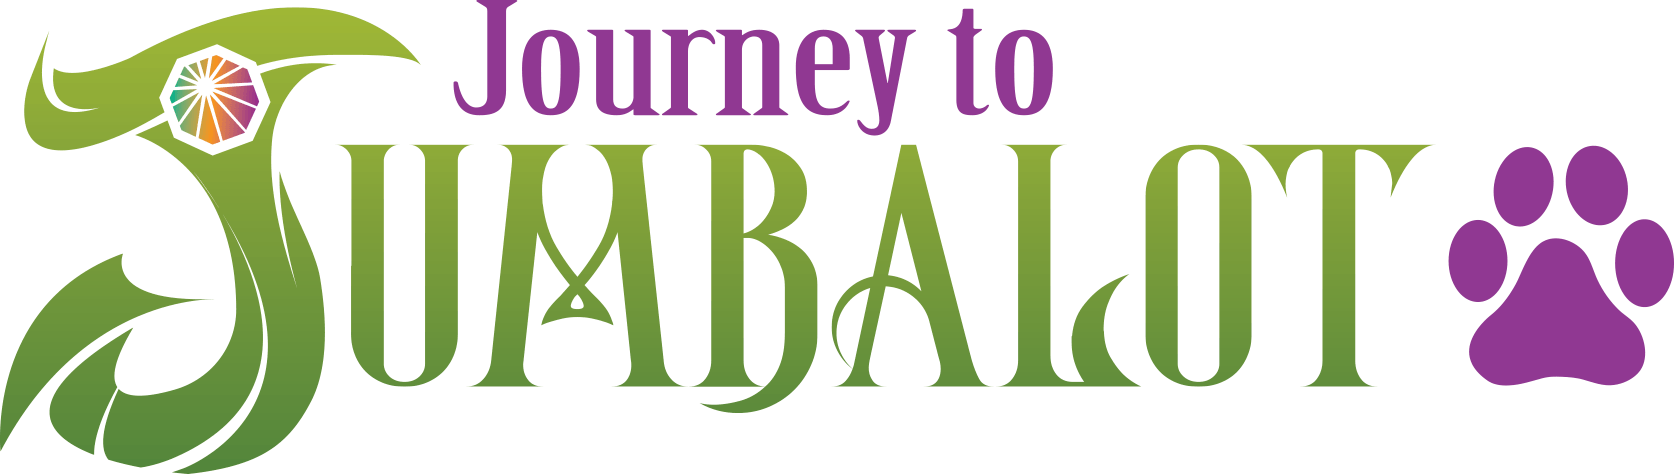 Journey to Jumbalot logo